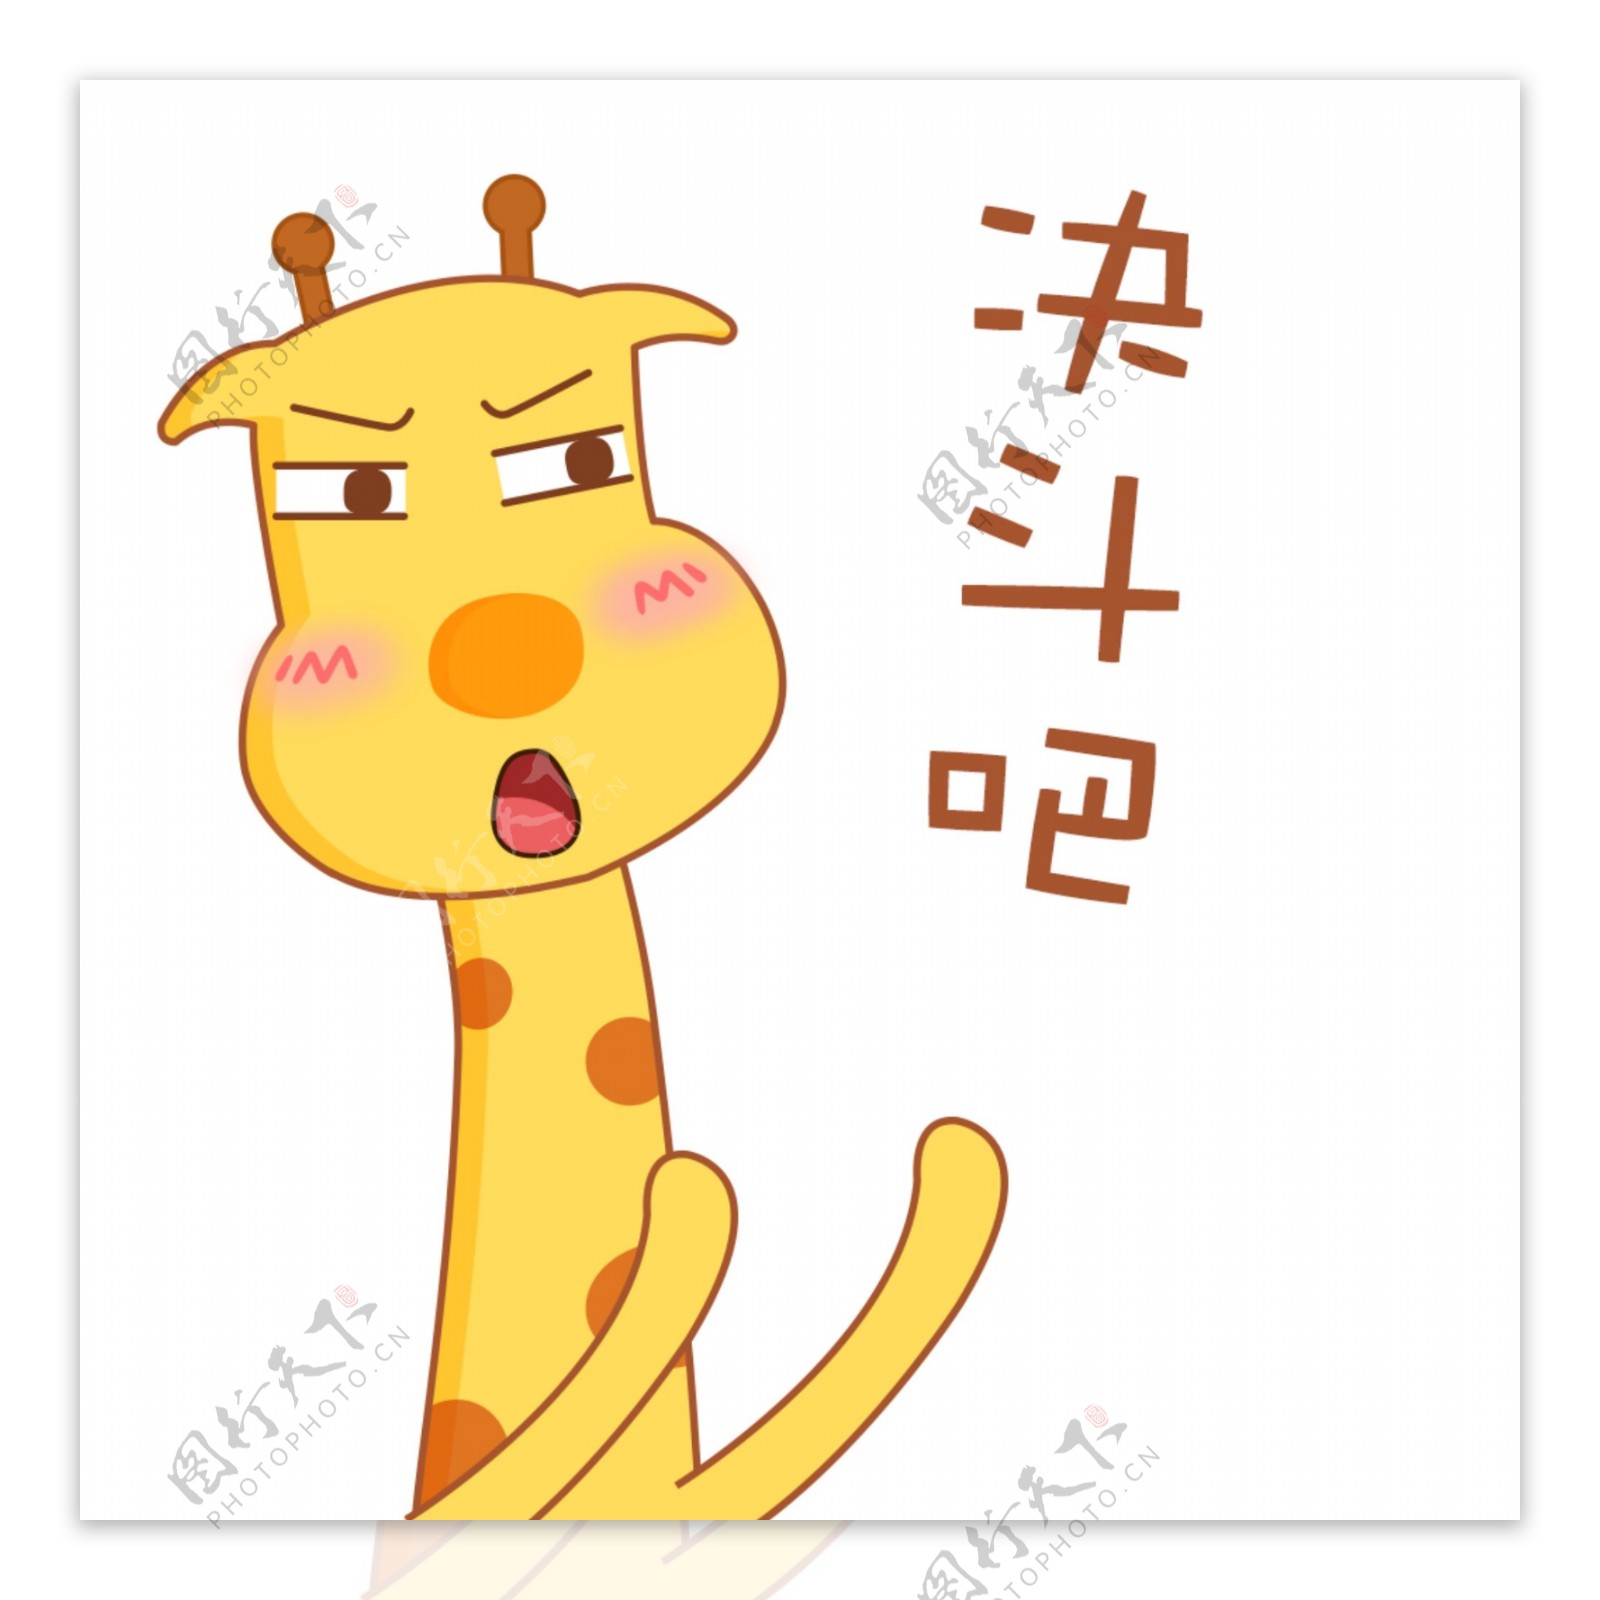 可爱卡通萌萌哒长颈鹿教育表情包峰峰